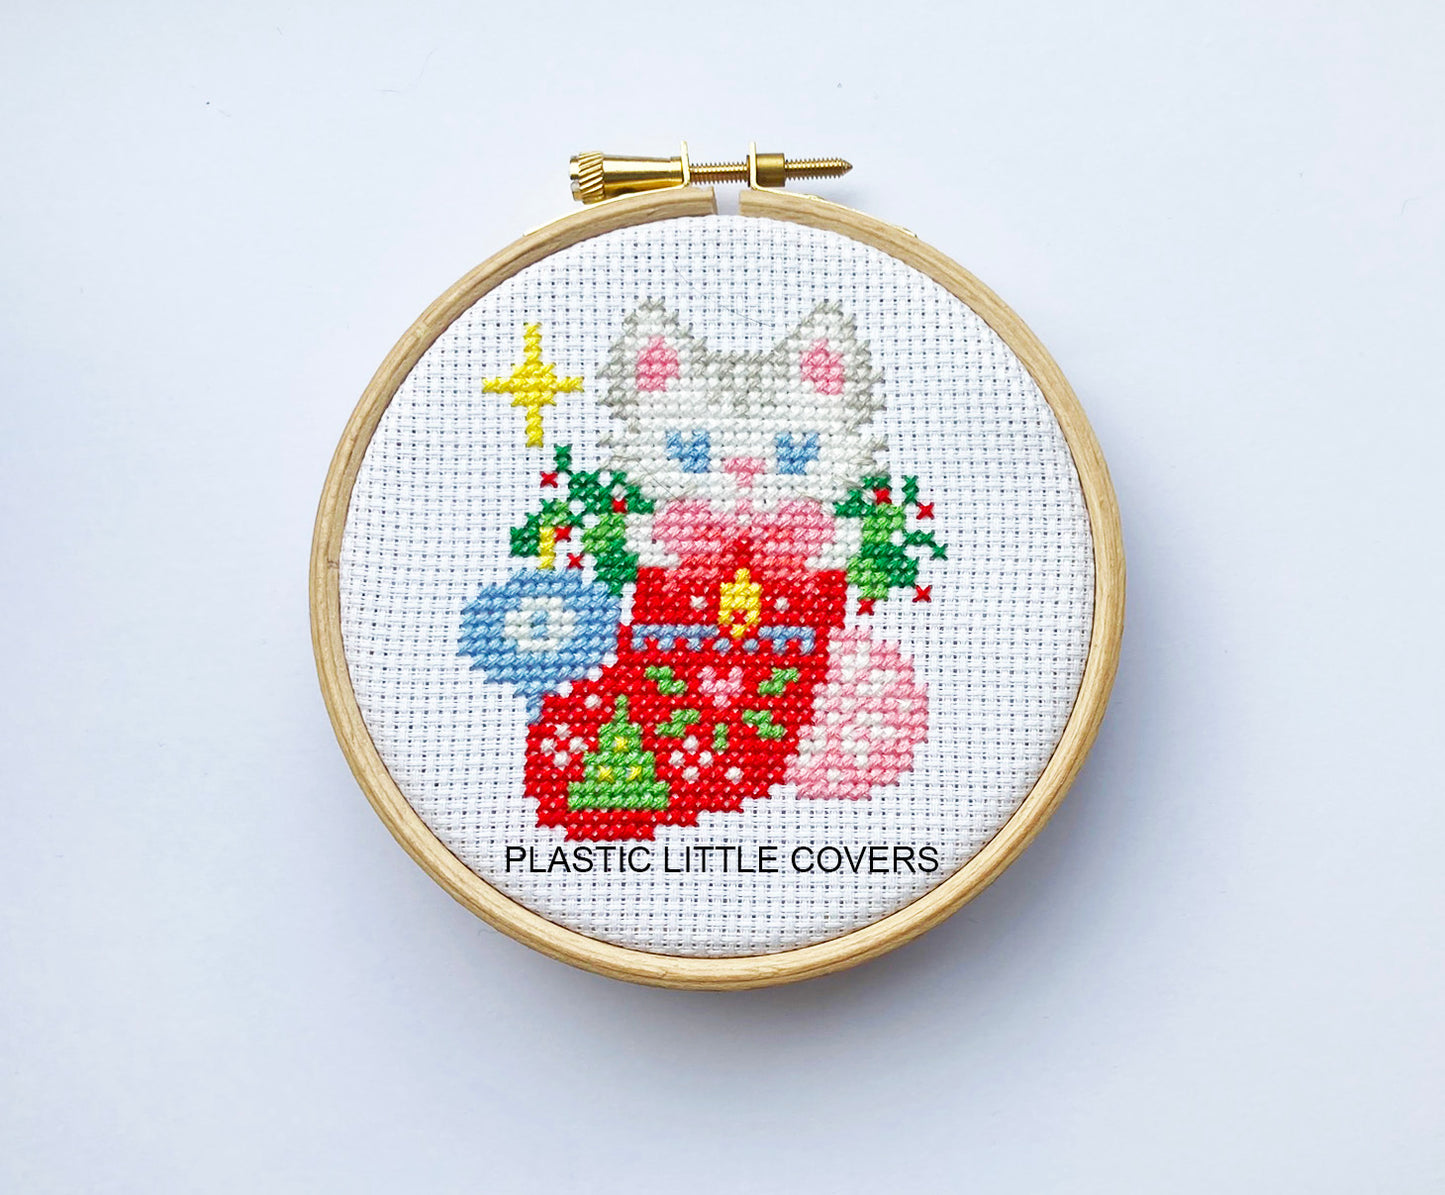 Christmas Kitten - Cross Stitch Pattern PDF.